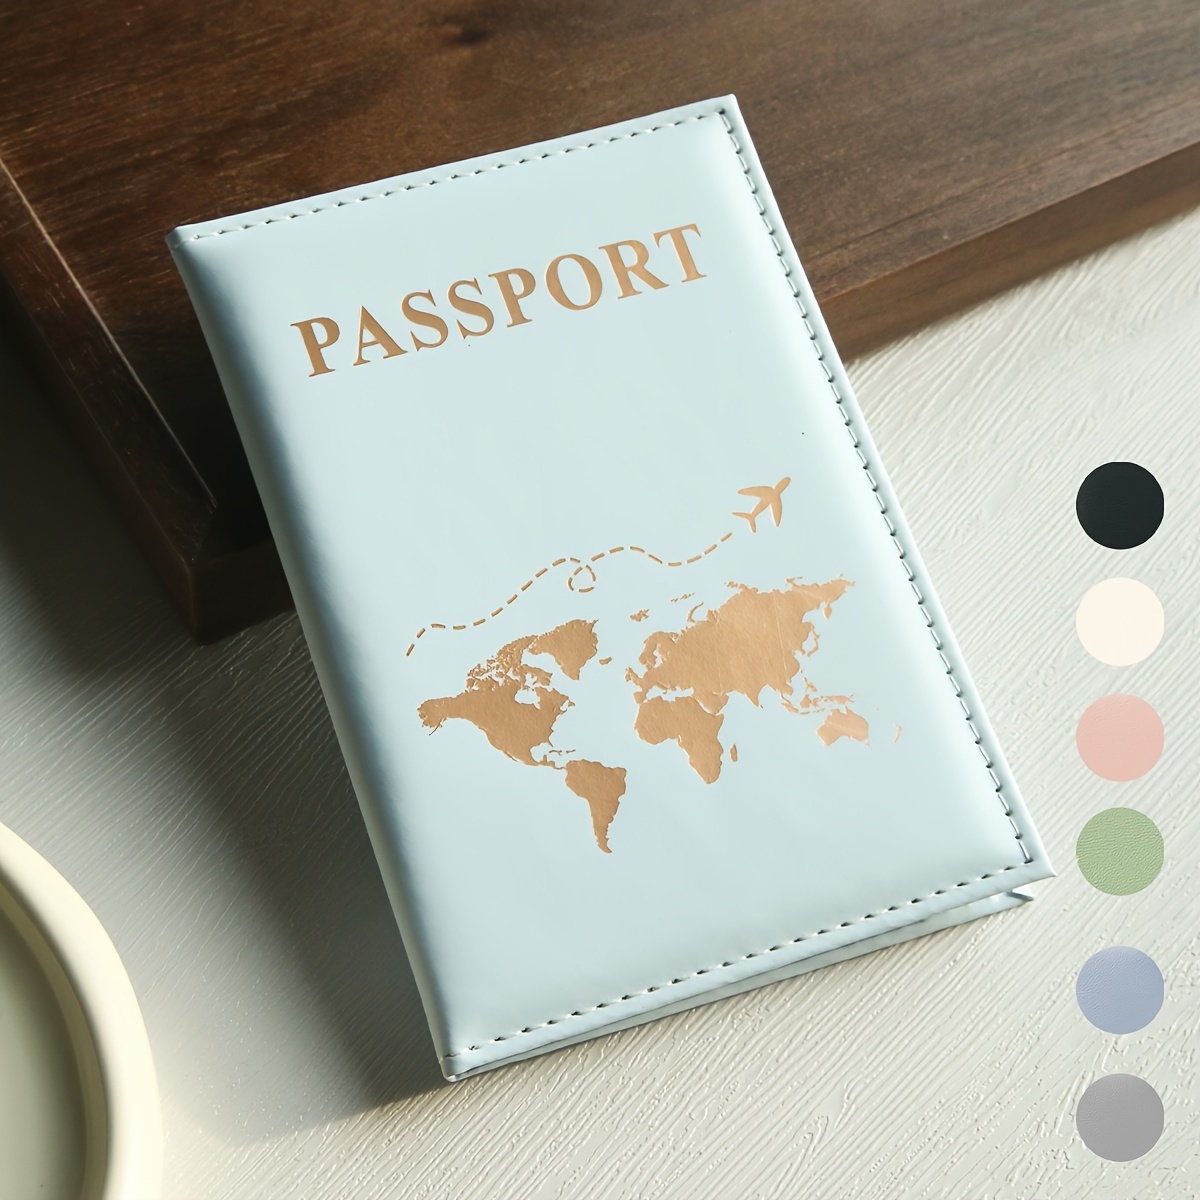 diario di viaggio, mappa del mondo, libro di legno / album fotografico  personalizzabile